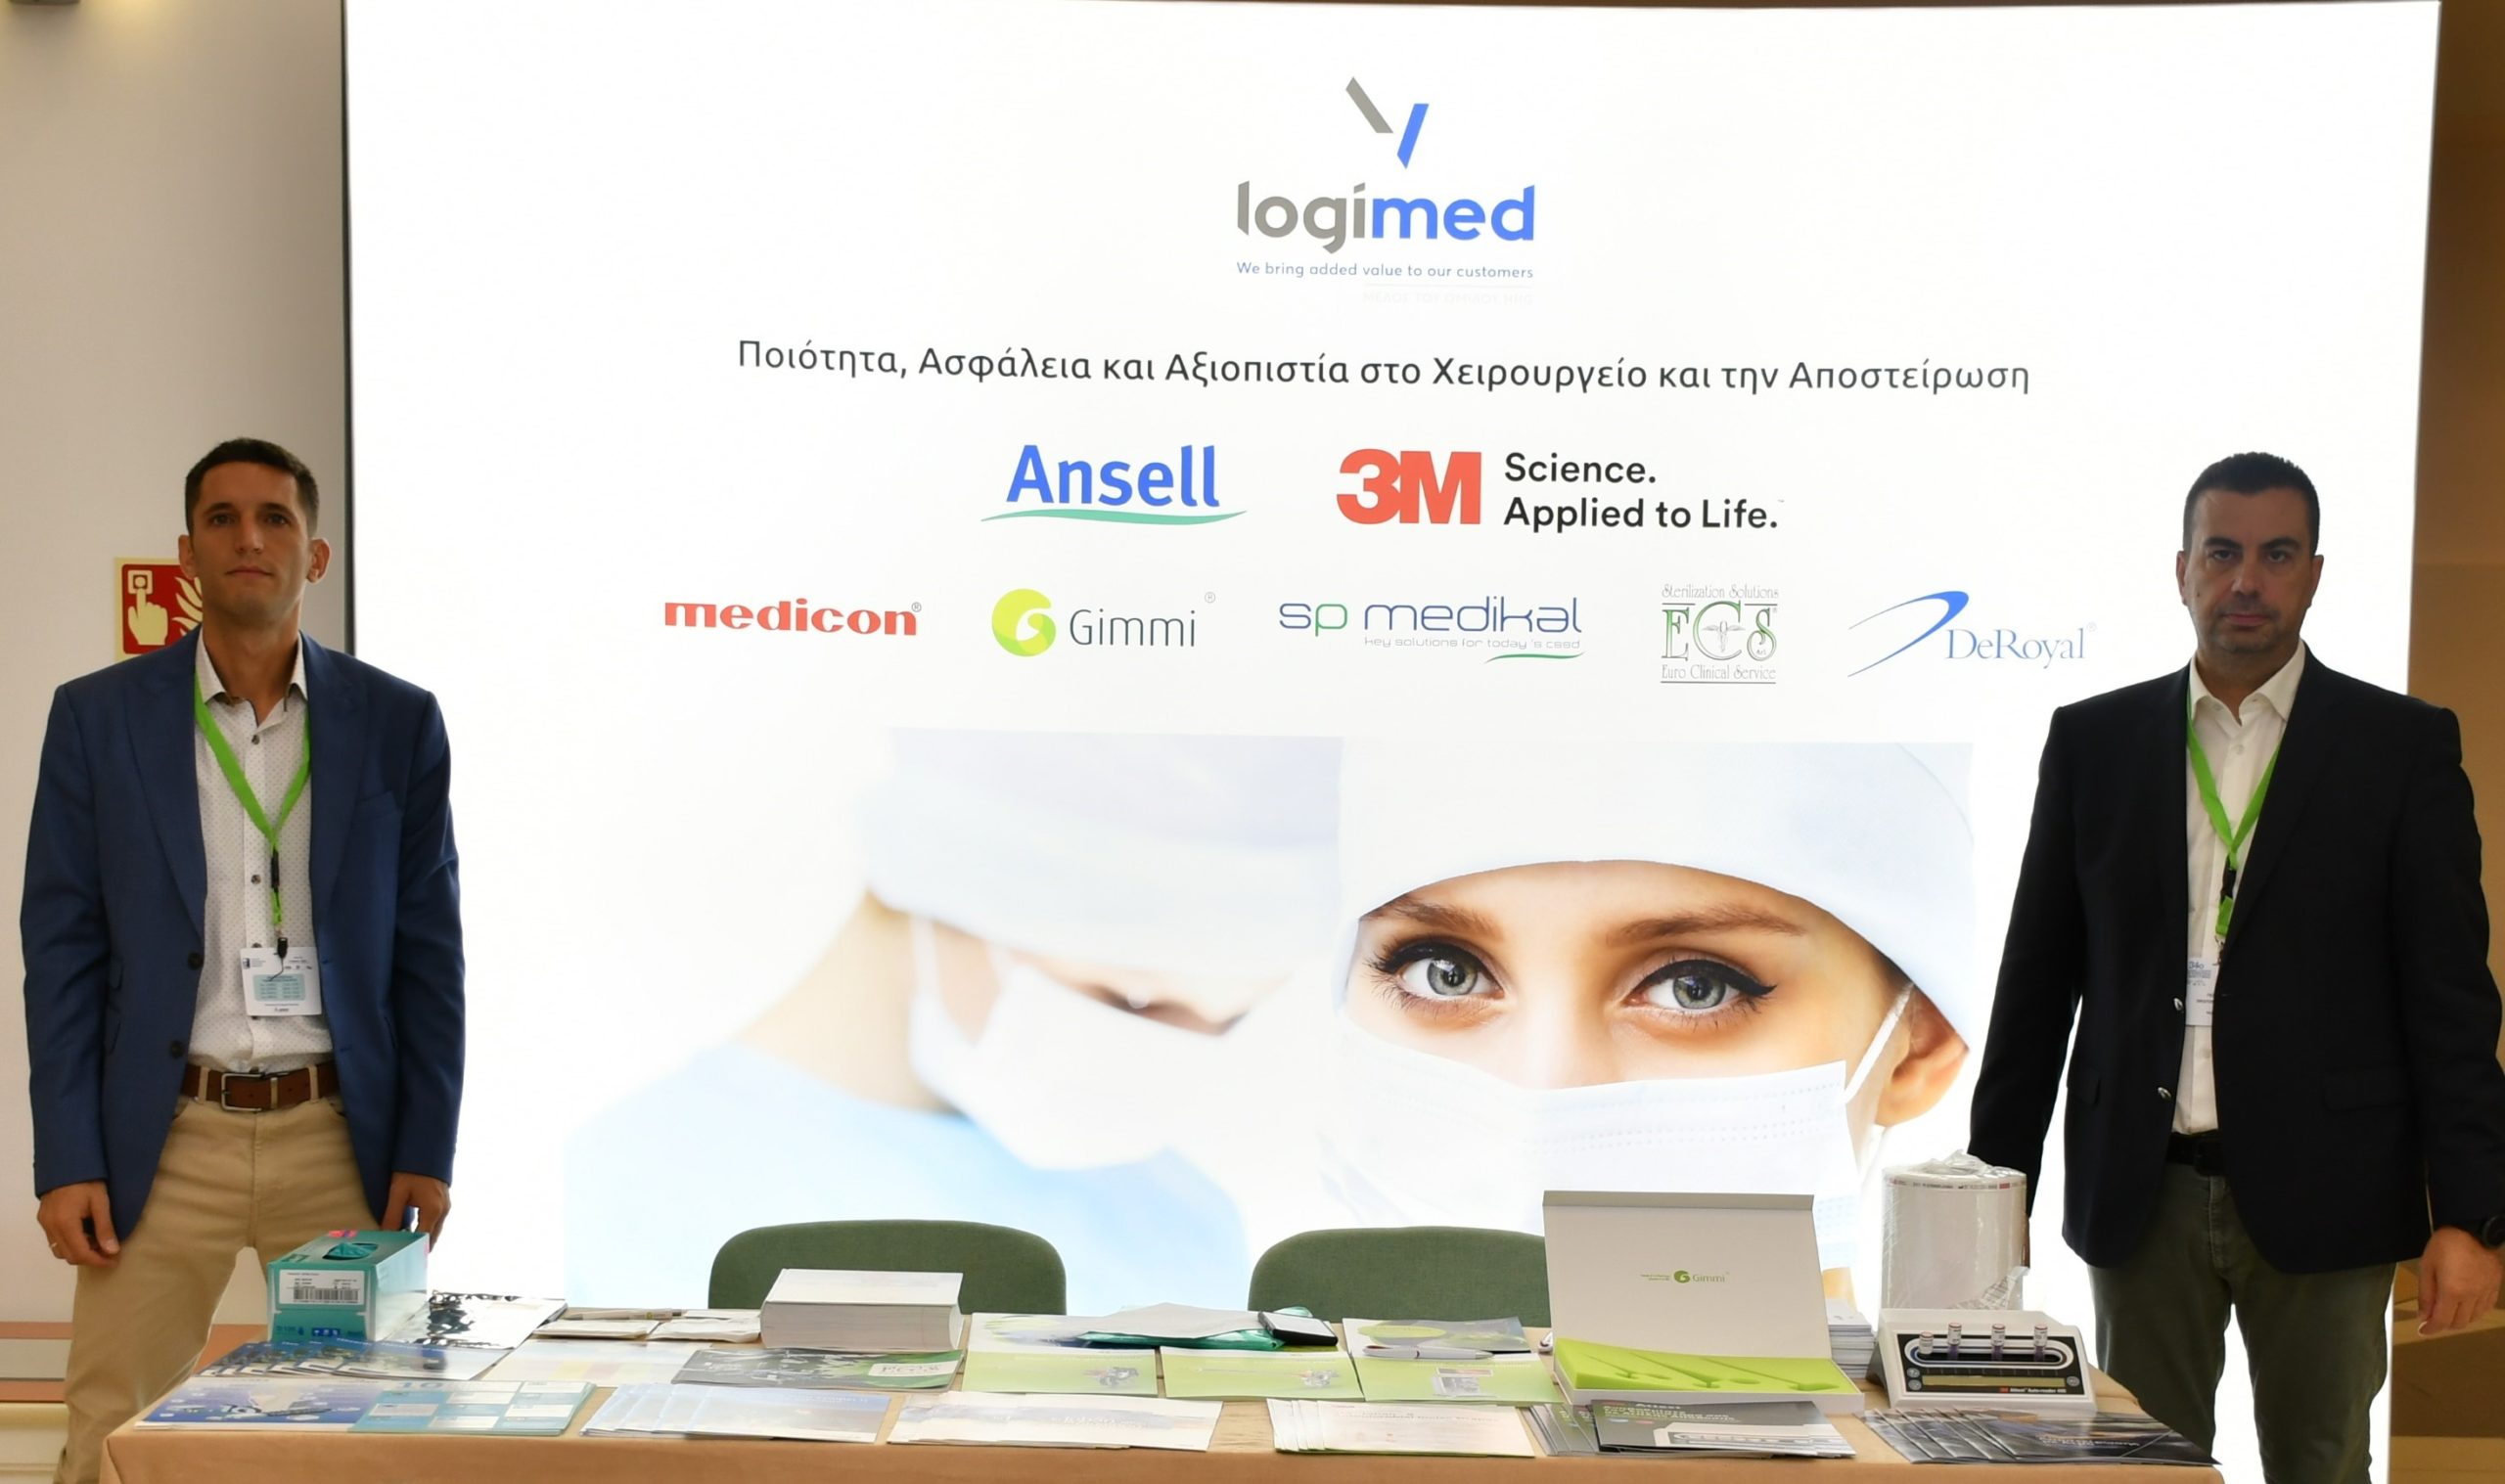 Η Y-Logimed συμμετείχε ενεργά στην επιστημονική υποστήριξη του 34ου Πανελλήνιου Συνεδρίου Περιεγχειρητικής Νοσηλευτικής που έγινε στις 21-24 Σεπτεμβρίου στην Κω.